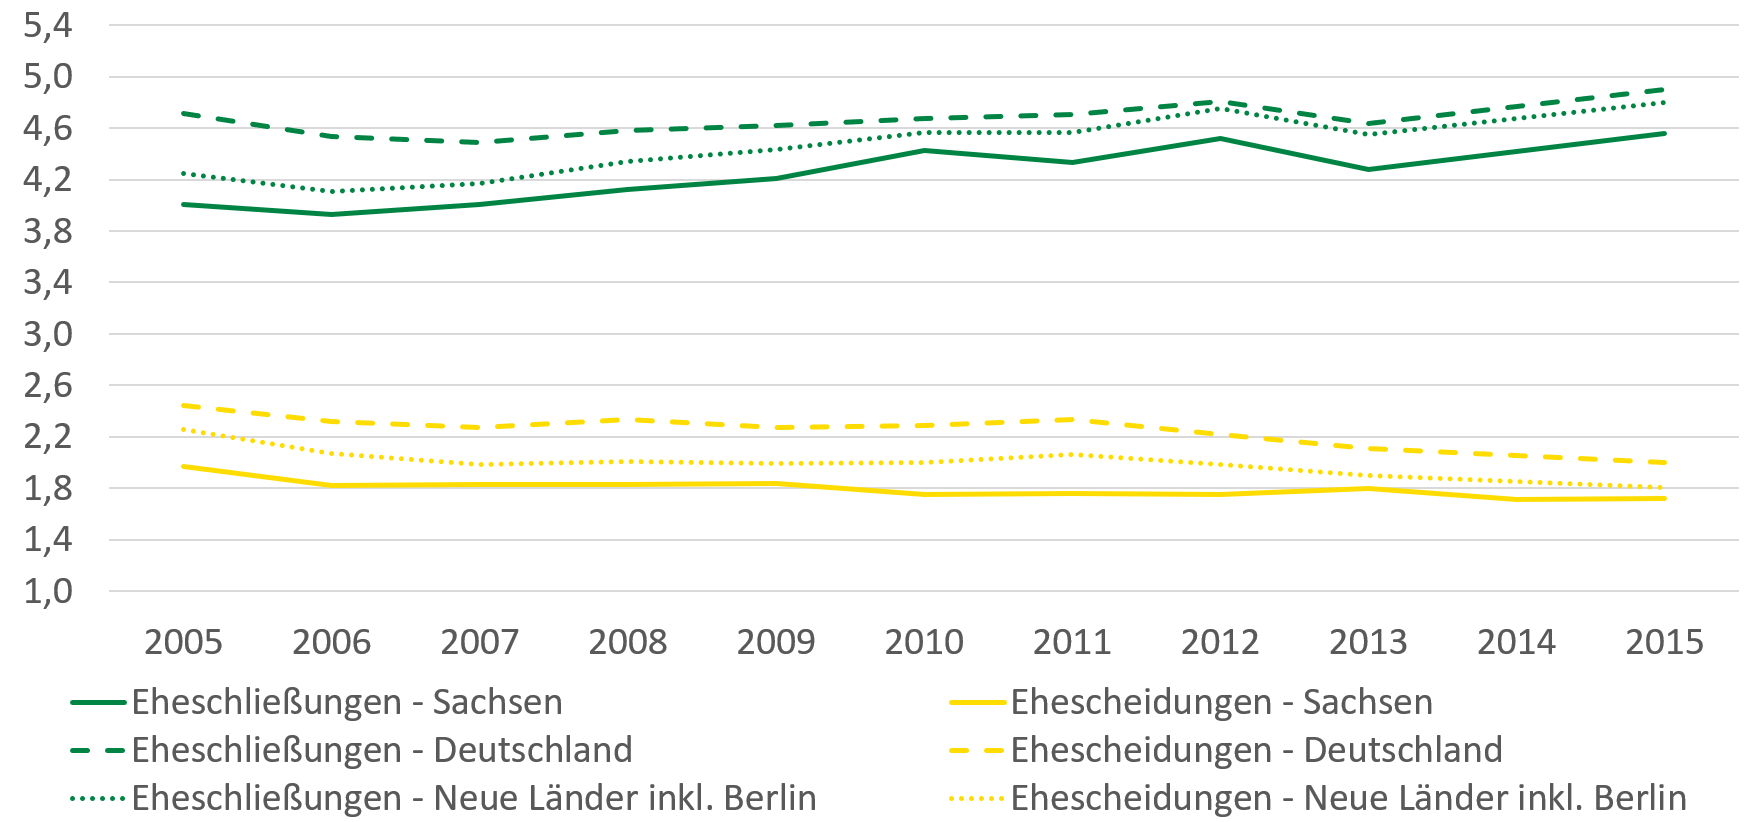 Bei den Eheschließungen zeigt sich ein leichter Anstieg für Sachsen, den neuen Bundesländern inkl. Berlin und Deutschland. Ehescheidungen sind von 2005 bis 2015 um circa 2-4 Prozent gesunken.